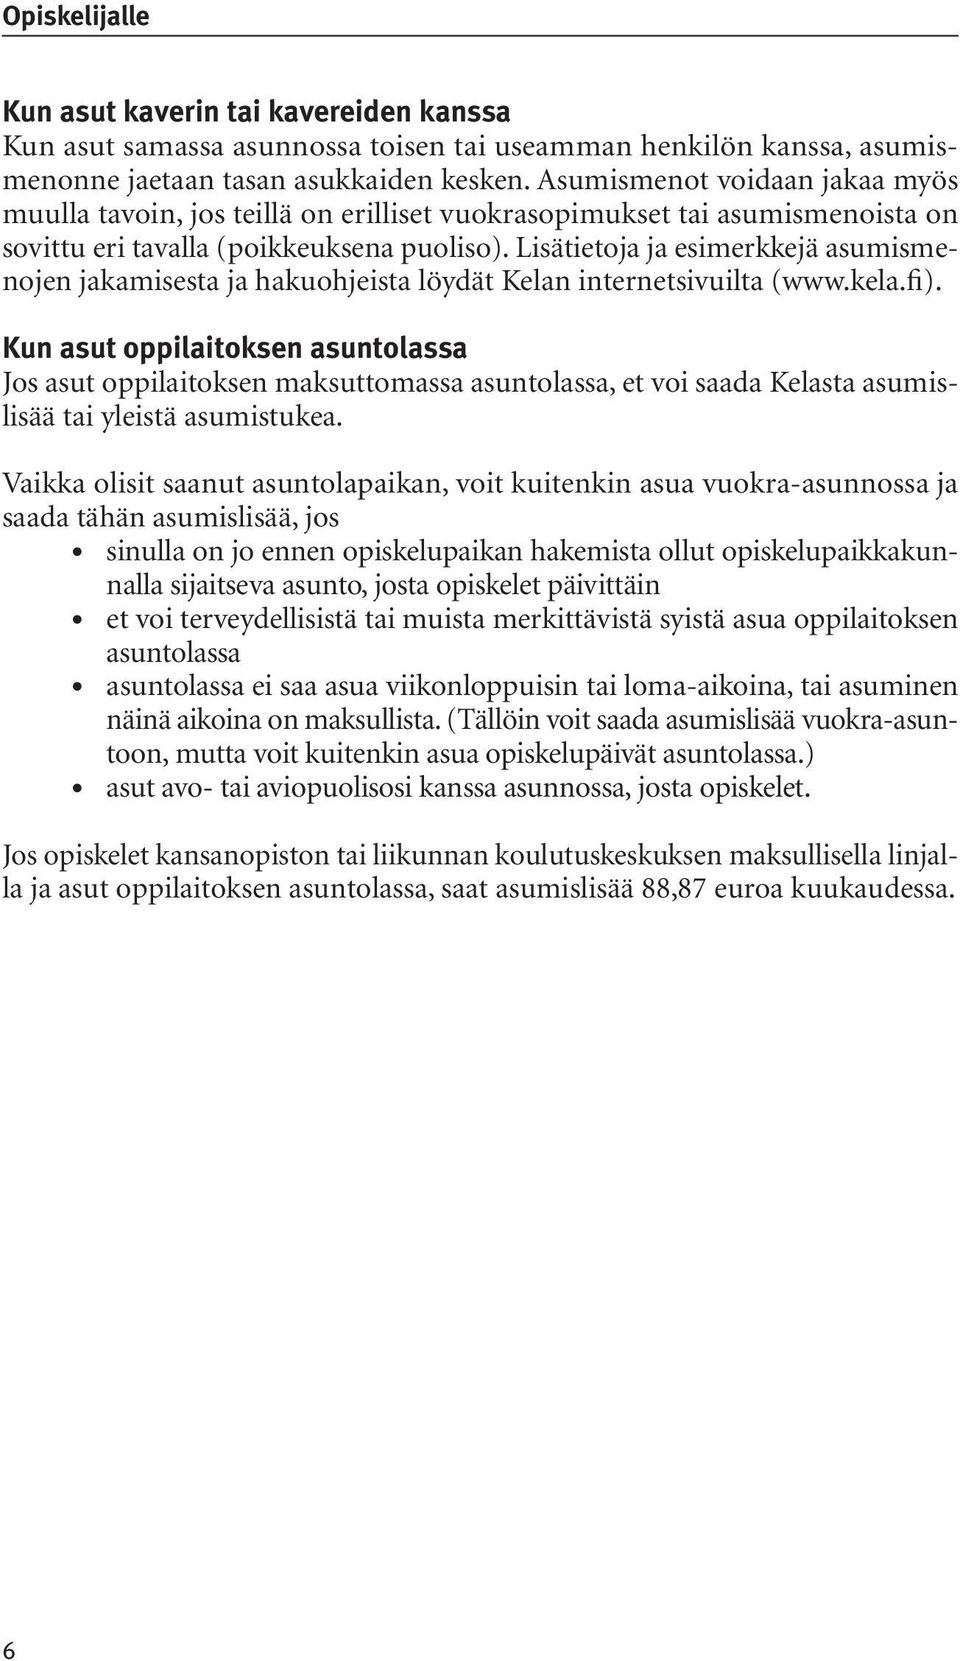 Lisätietoja ja esimerkkejä asumismenojen jakamisesta ja hakuohjeista löydät Kelan internetsivuilta (www.kela.fi).